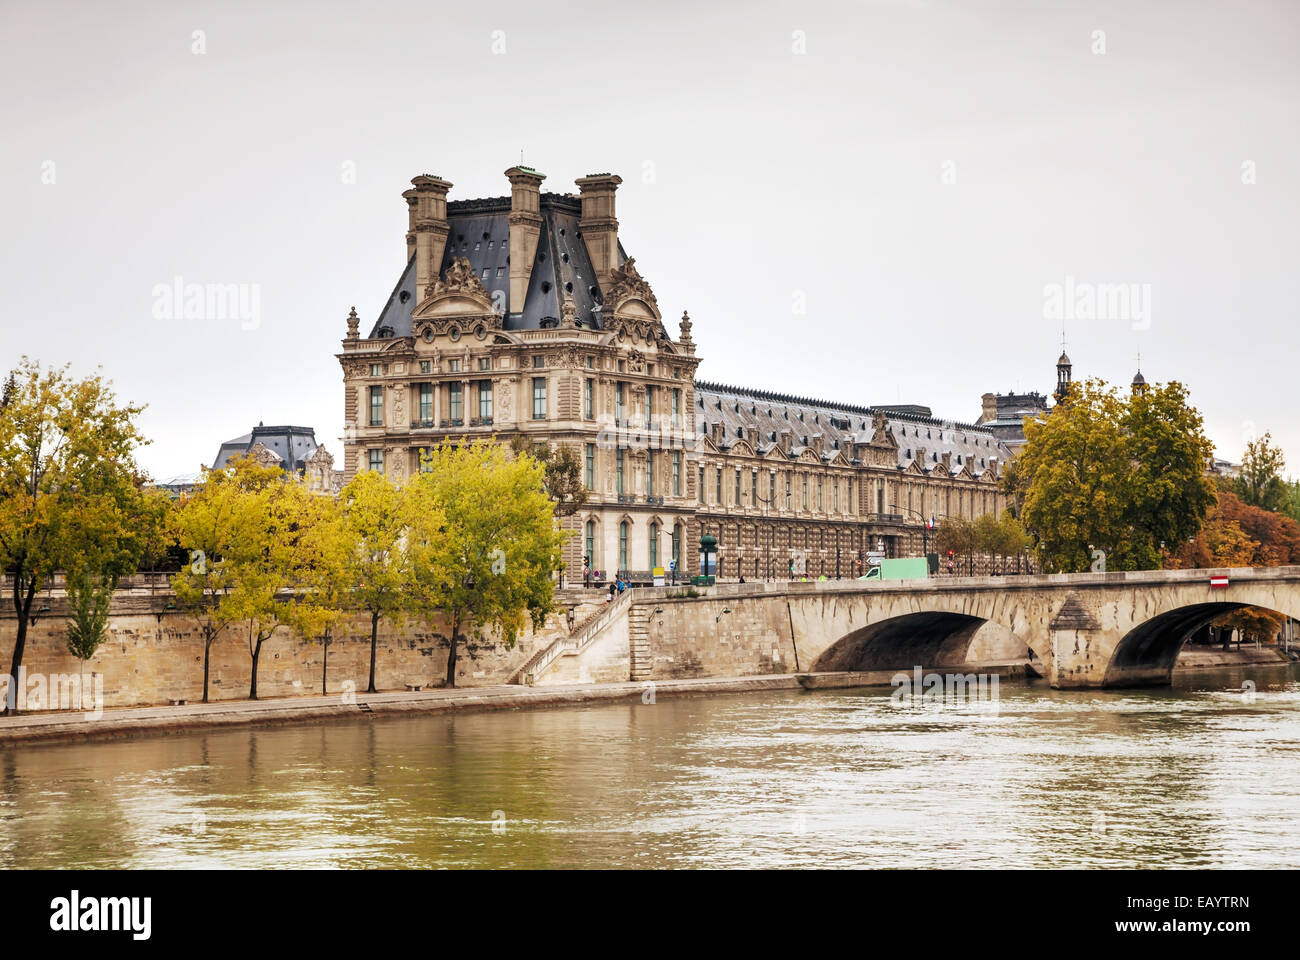 Louvre-Palast in Paris, Frankreich an einem bewölkten Tag Stockfoto